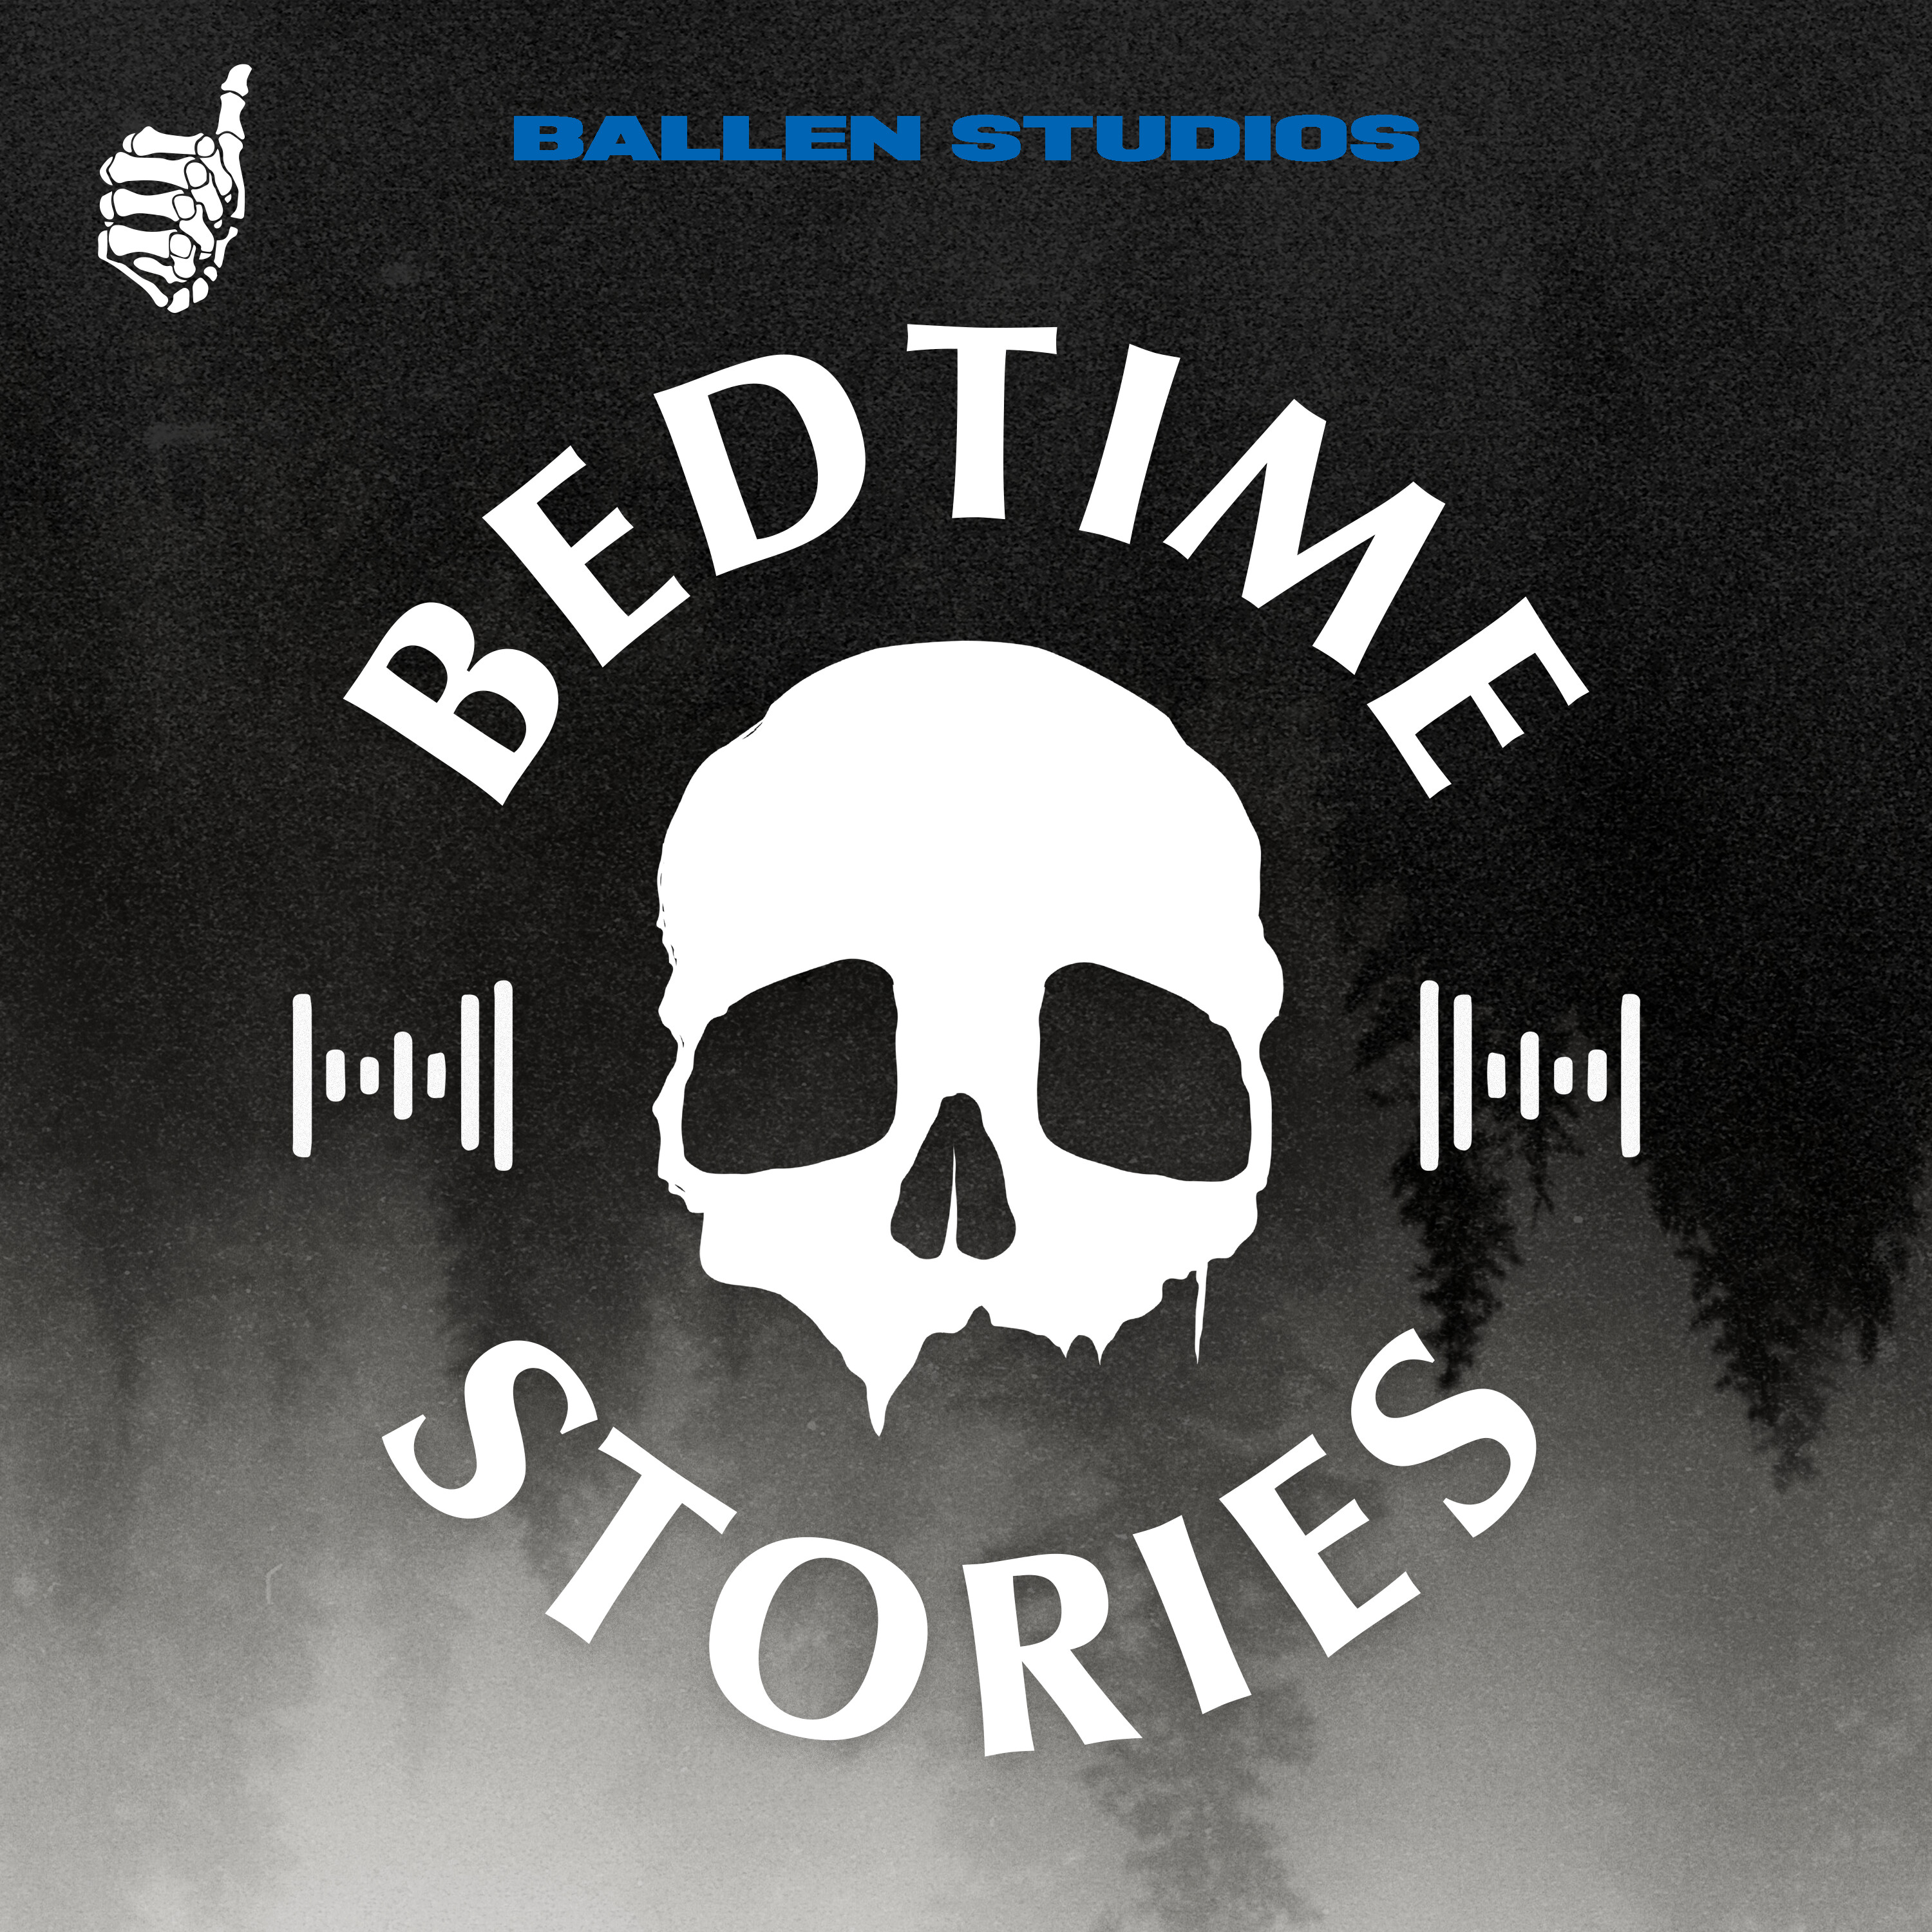 Listen Now: Bedtime Stories by Ballen Studios